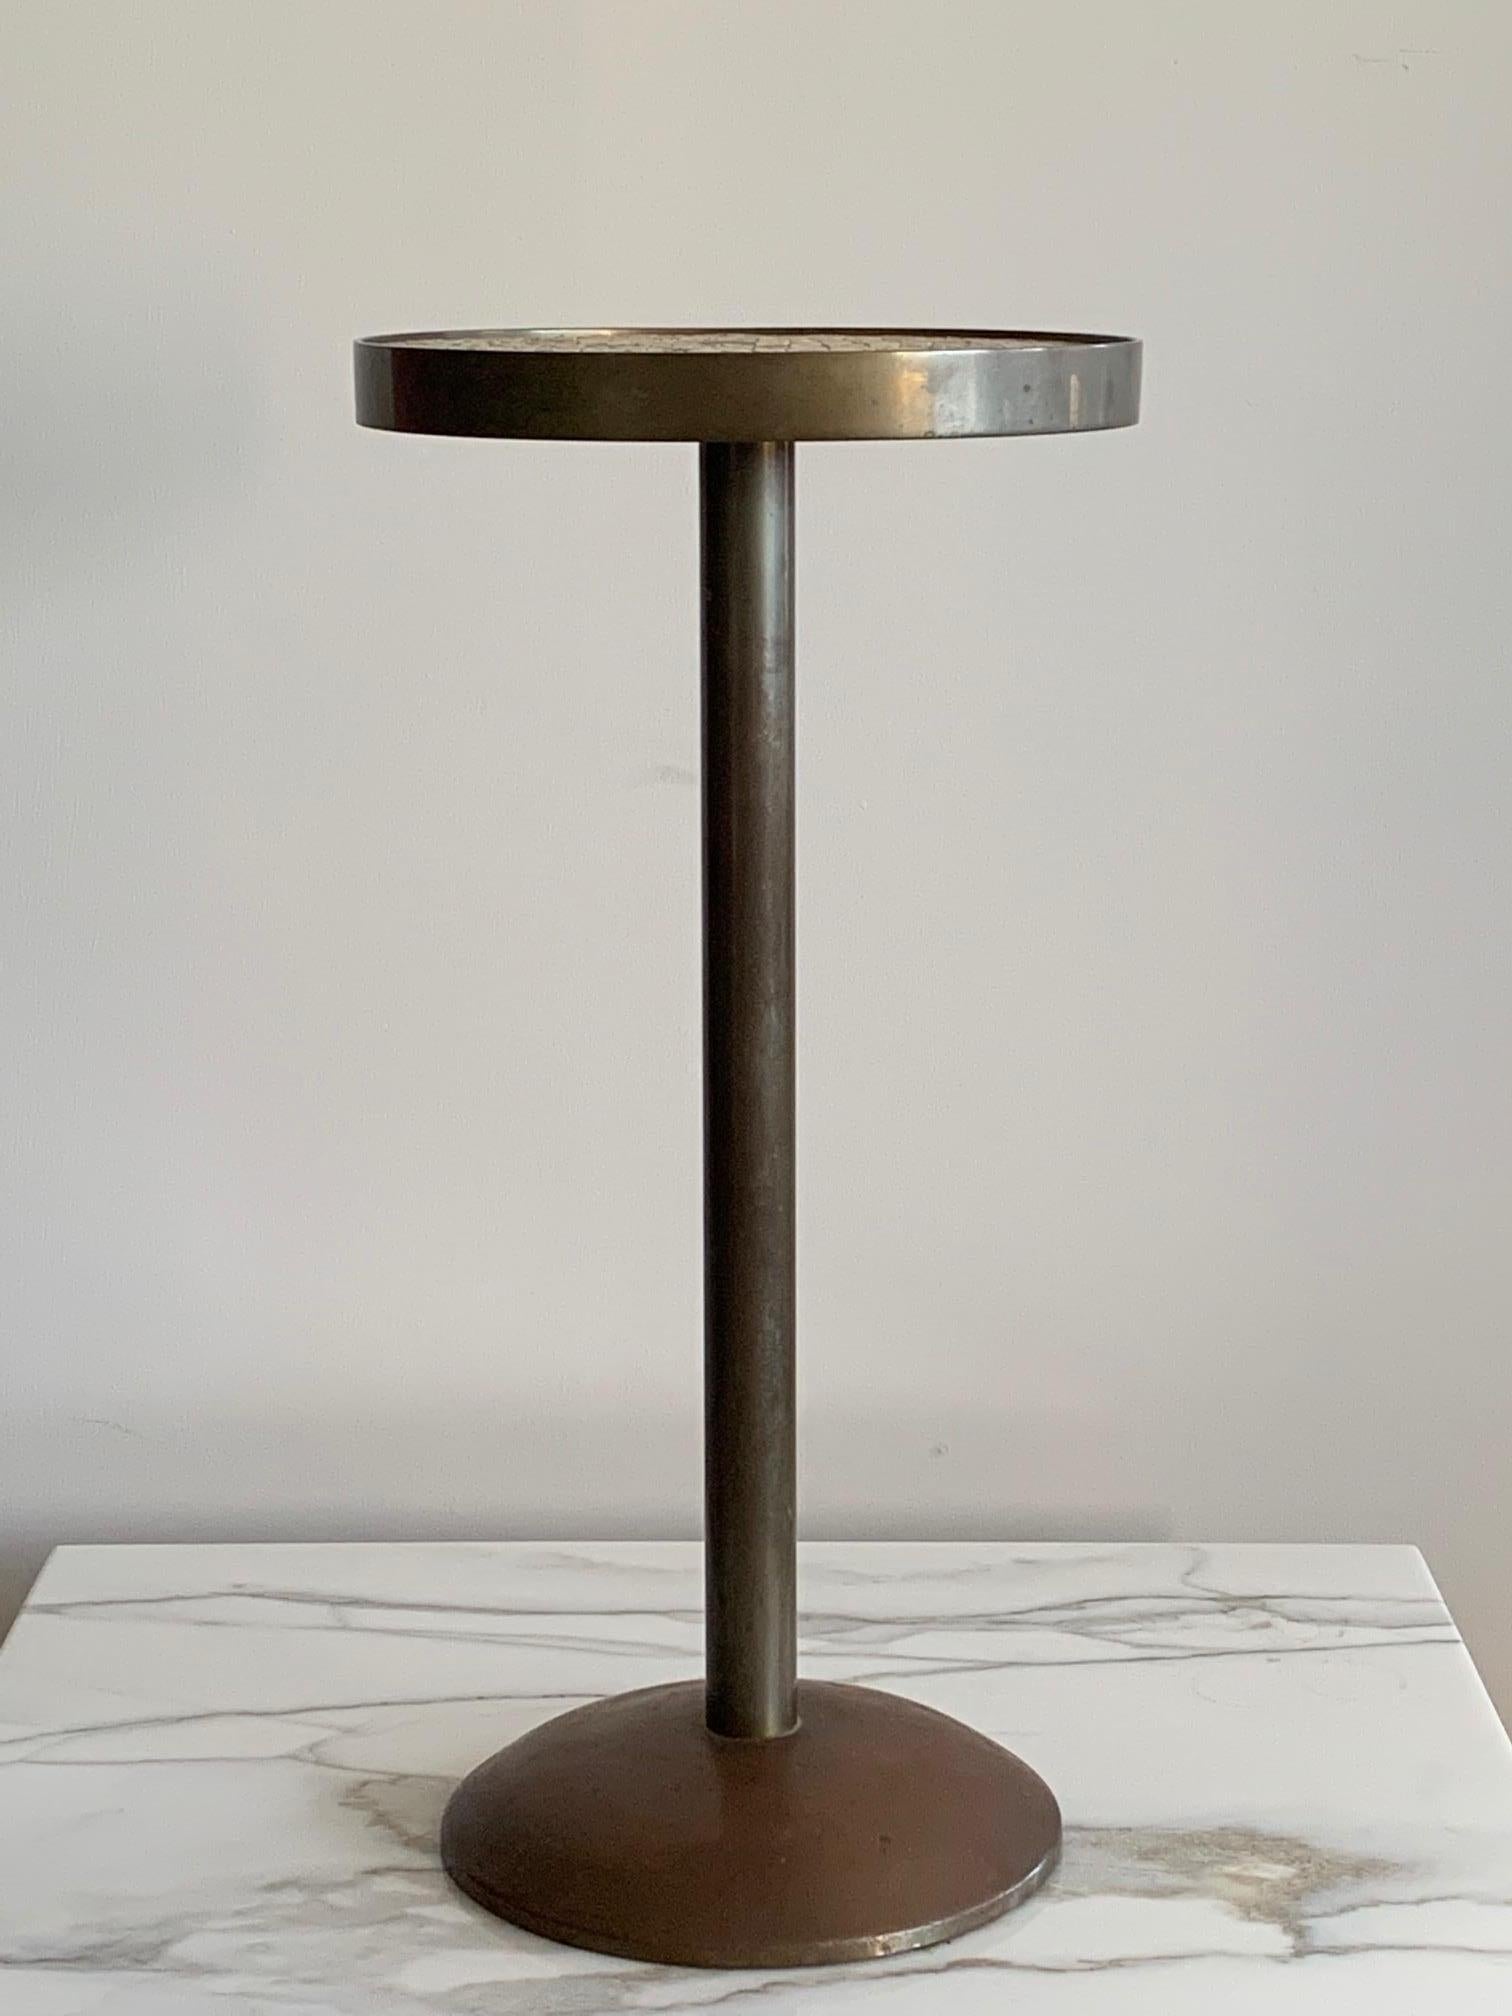 Ein ungewöhnlicher Bronzetisch mit Kachelplatte. Sehr schwer und gut verarbeitet.